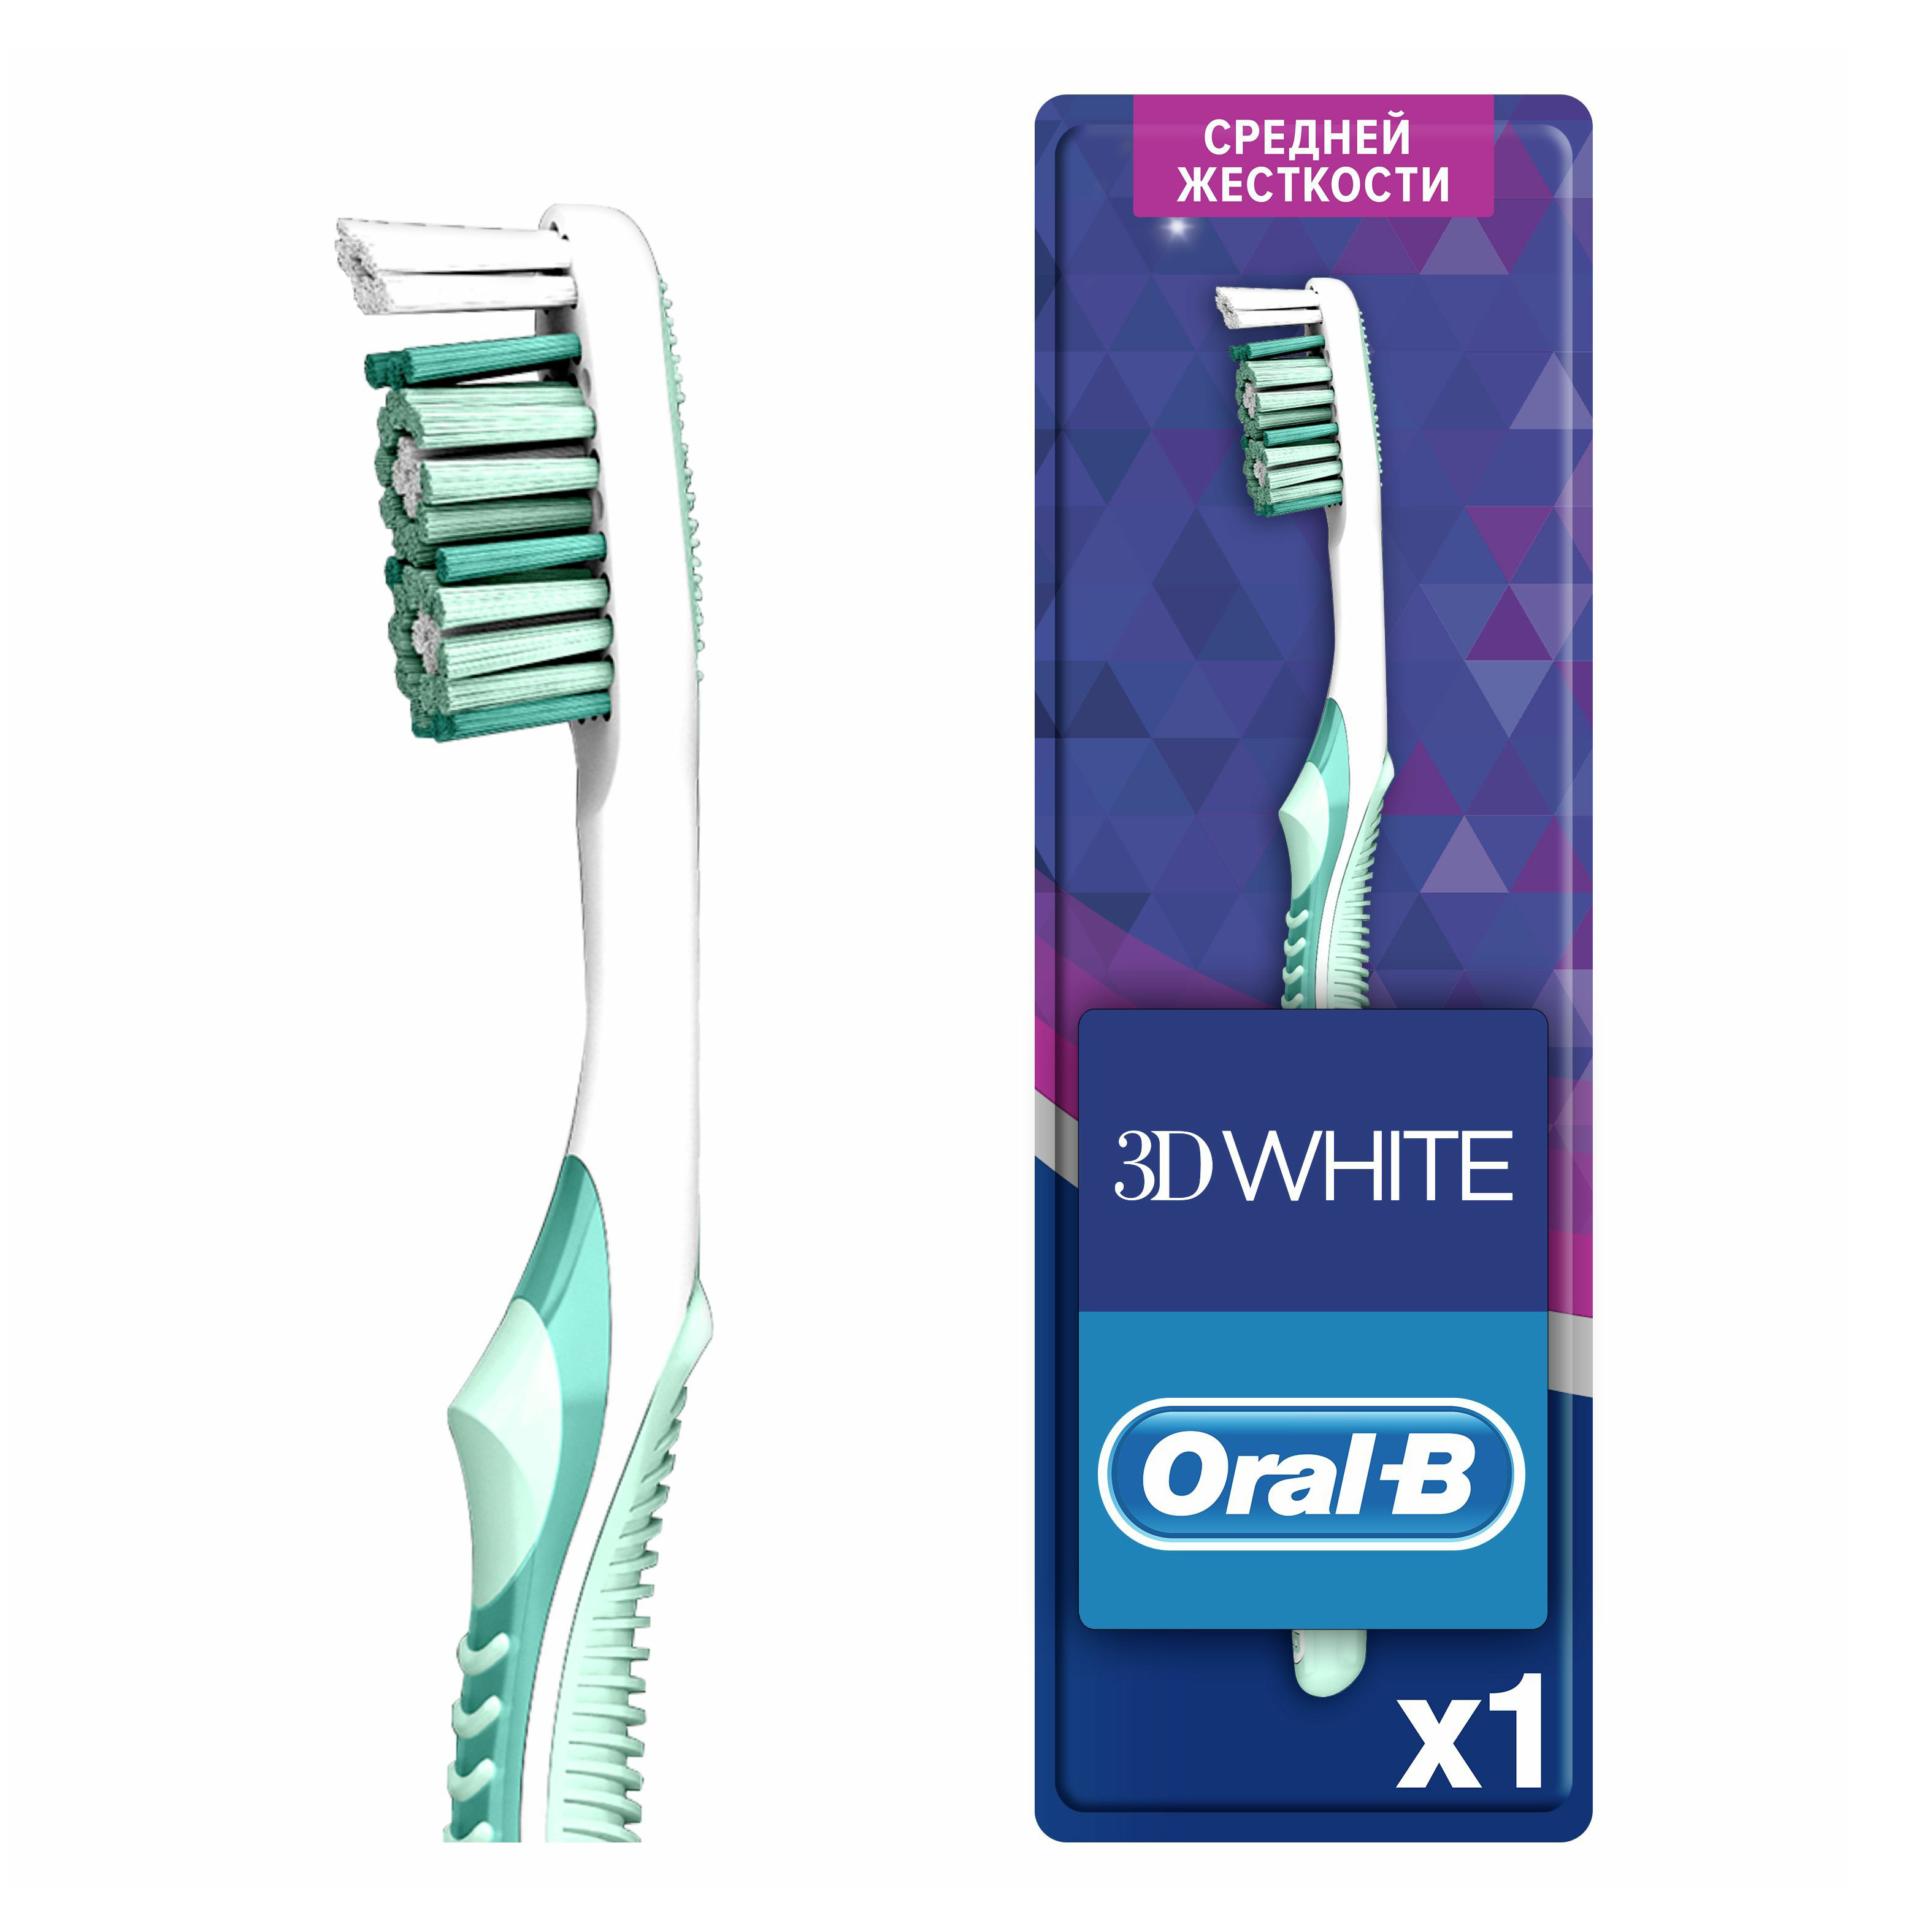 Зубная щетка Oral-B 3D White Whitening средней жесткости щетка зубная электрическая pro500 crossaction 3756 с зарядным устройством 3757 oral b орал би